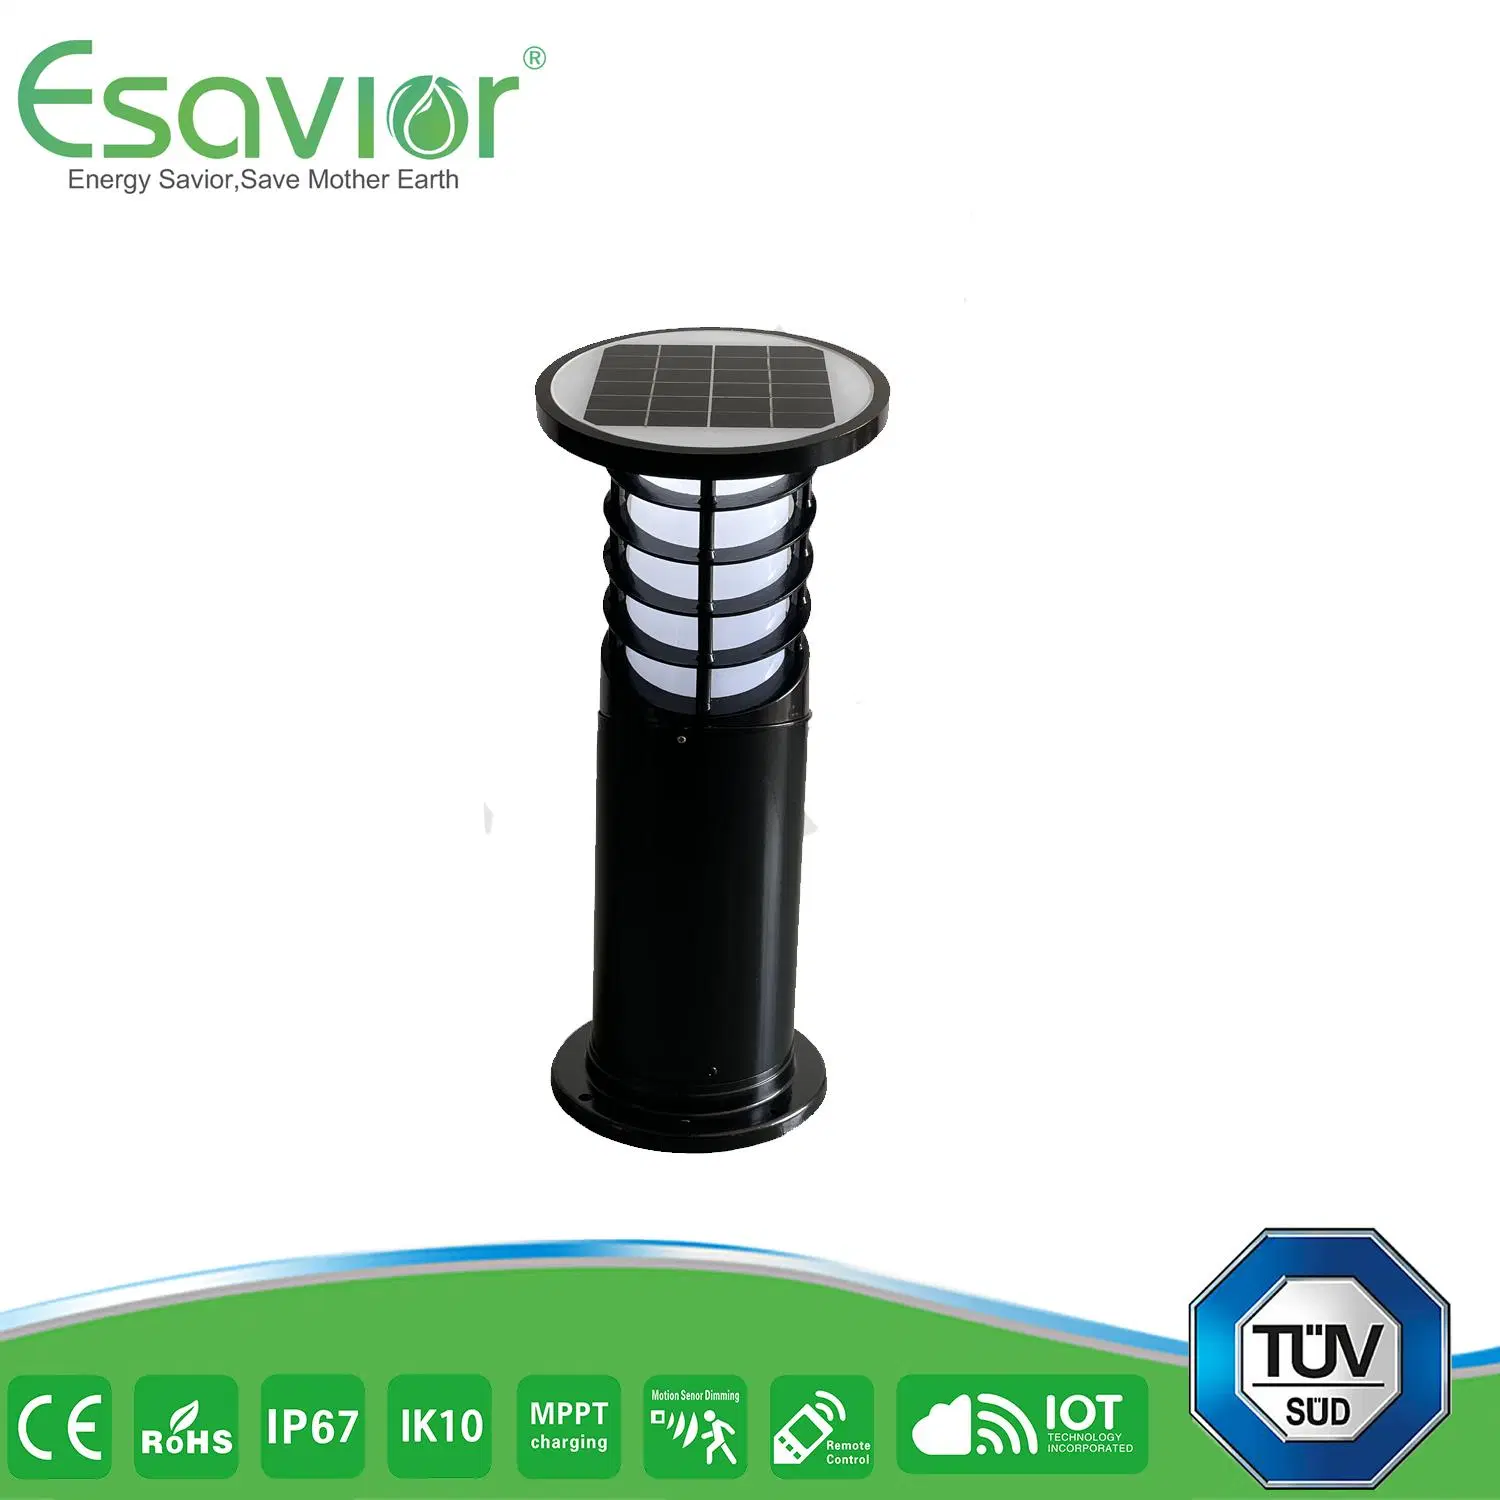 Lâmpada solar Bollard / Lawn / luz de jardim Esavor Solar Powered LED